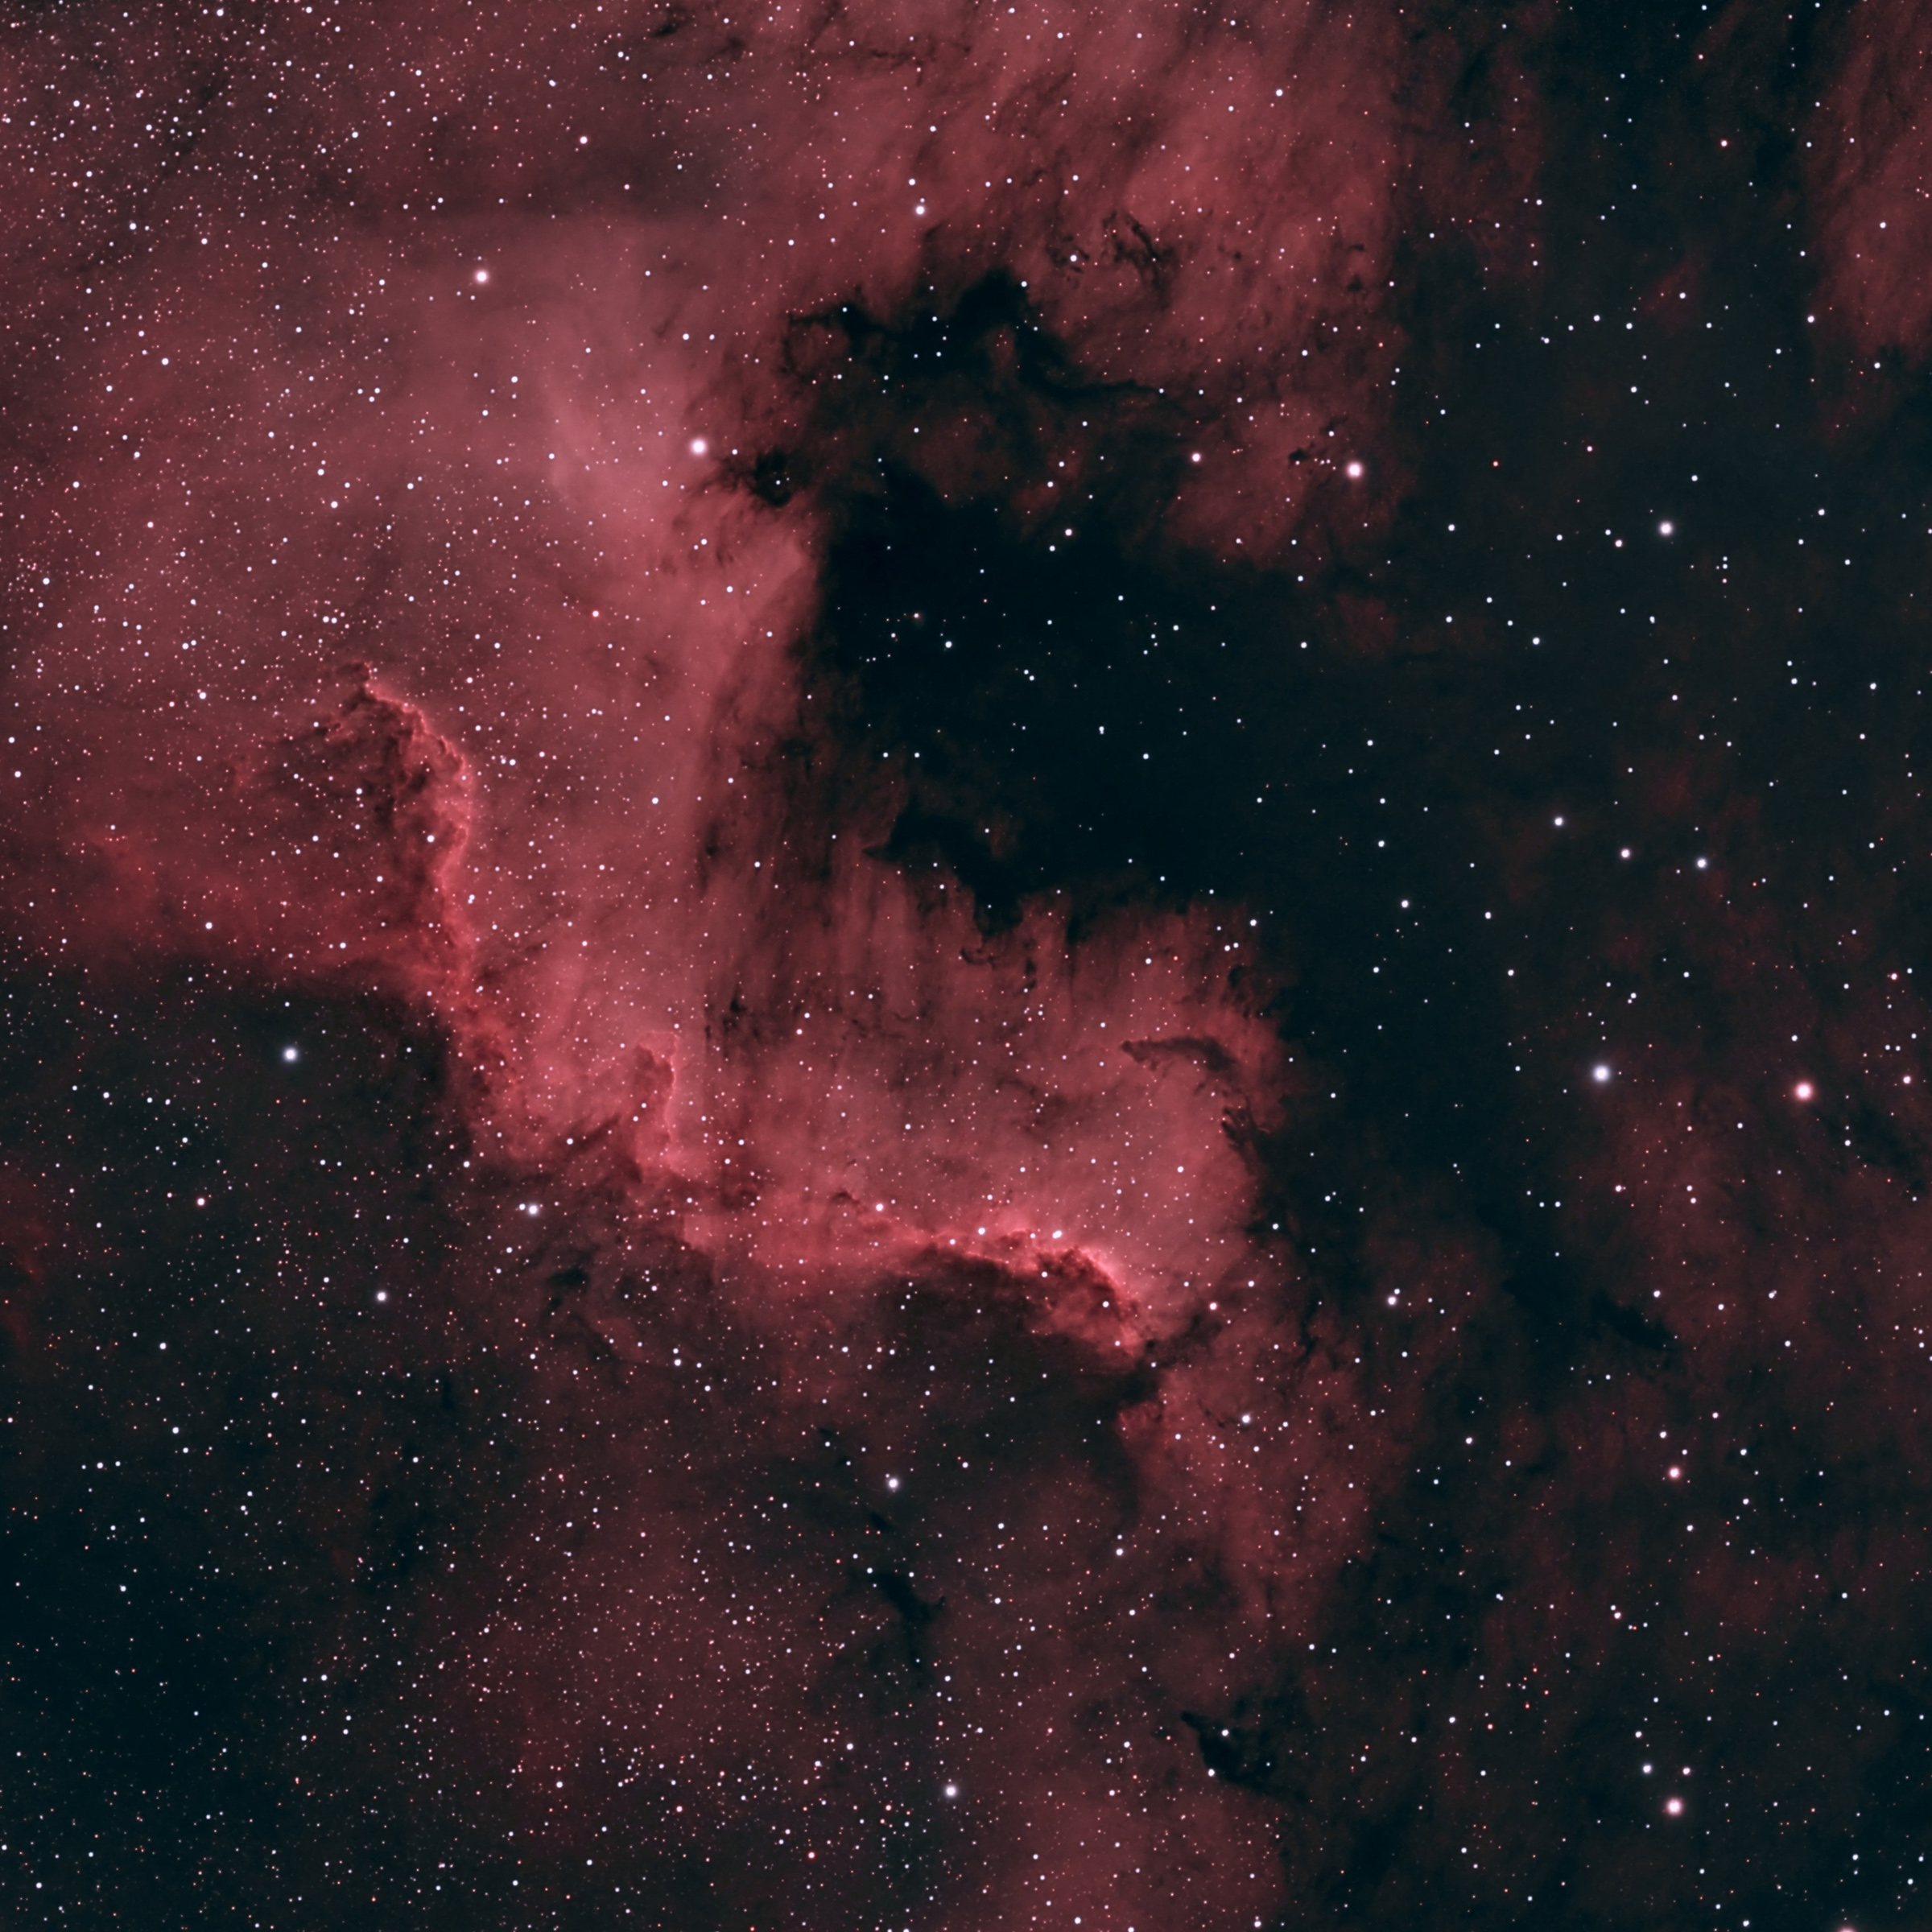 08 - North America Nebula